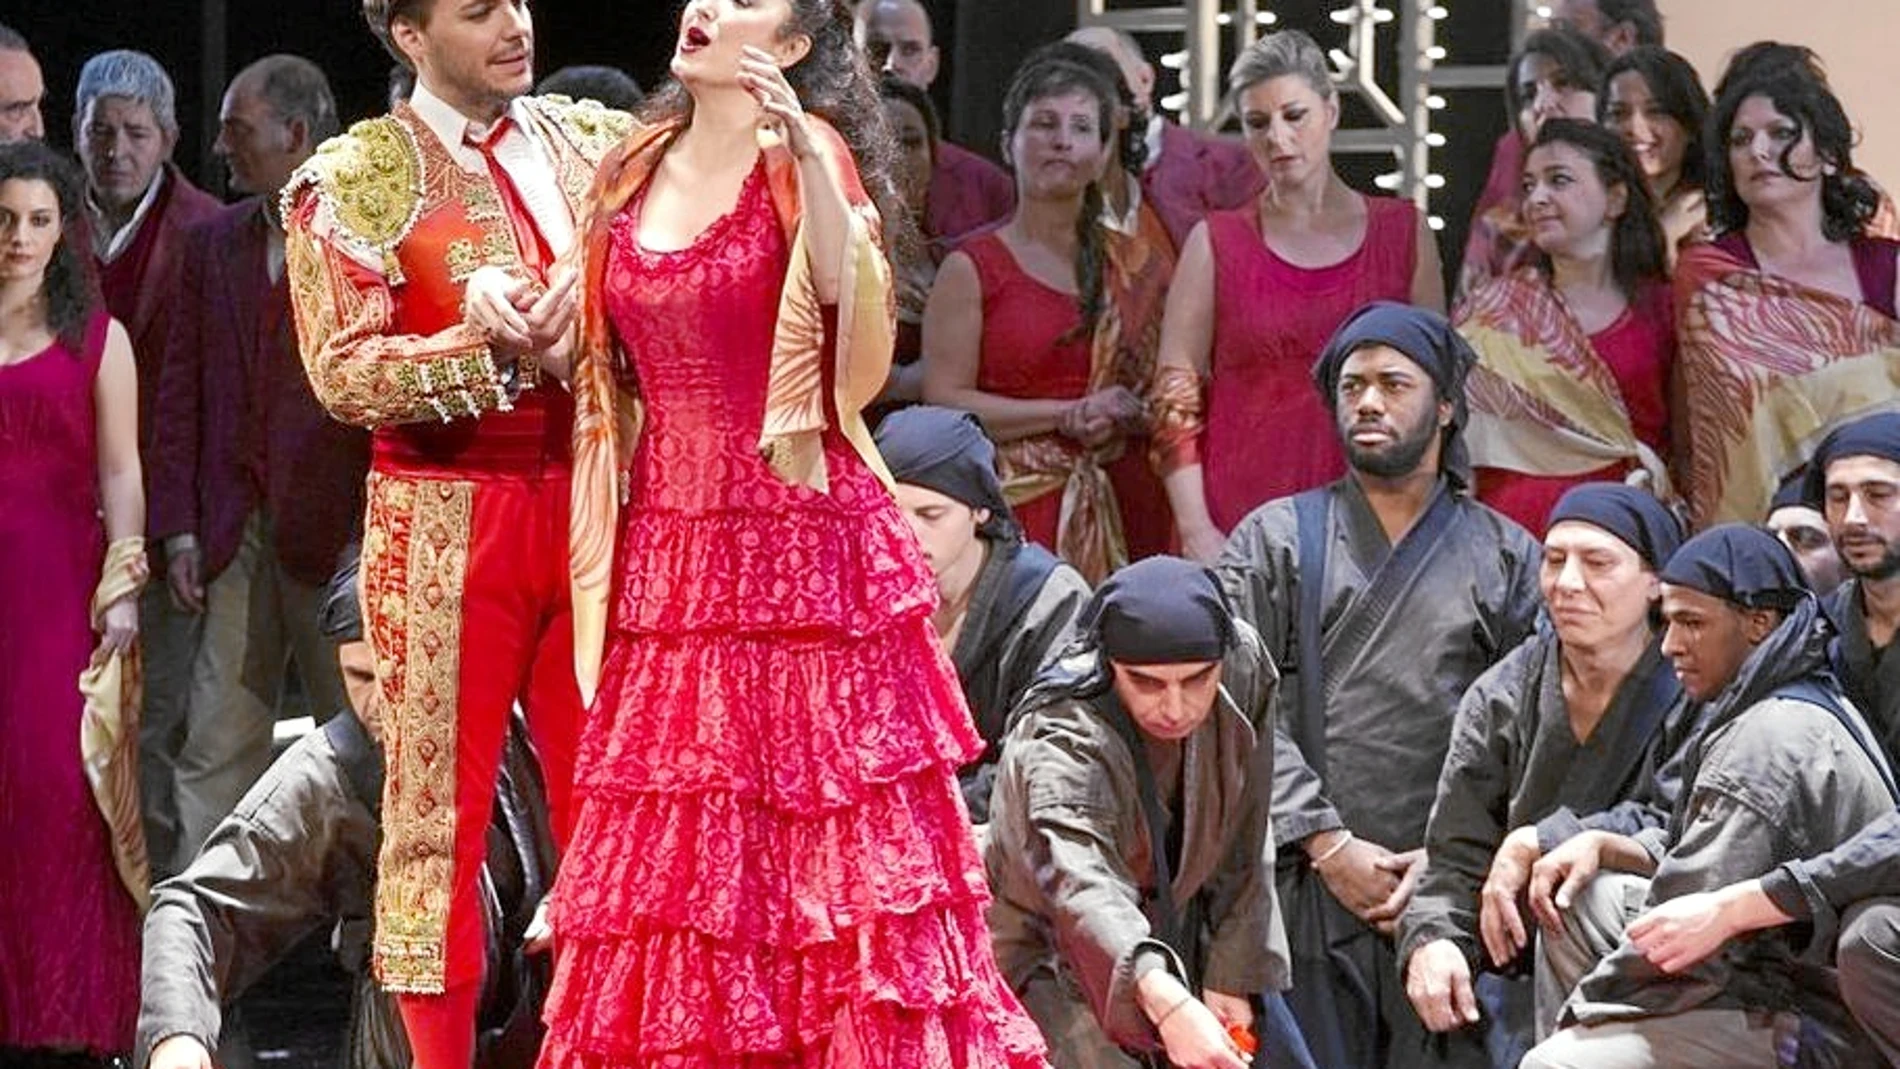 La mezzosporano española fue de lo mejor que se vio en el Teatro San Carlo